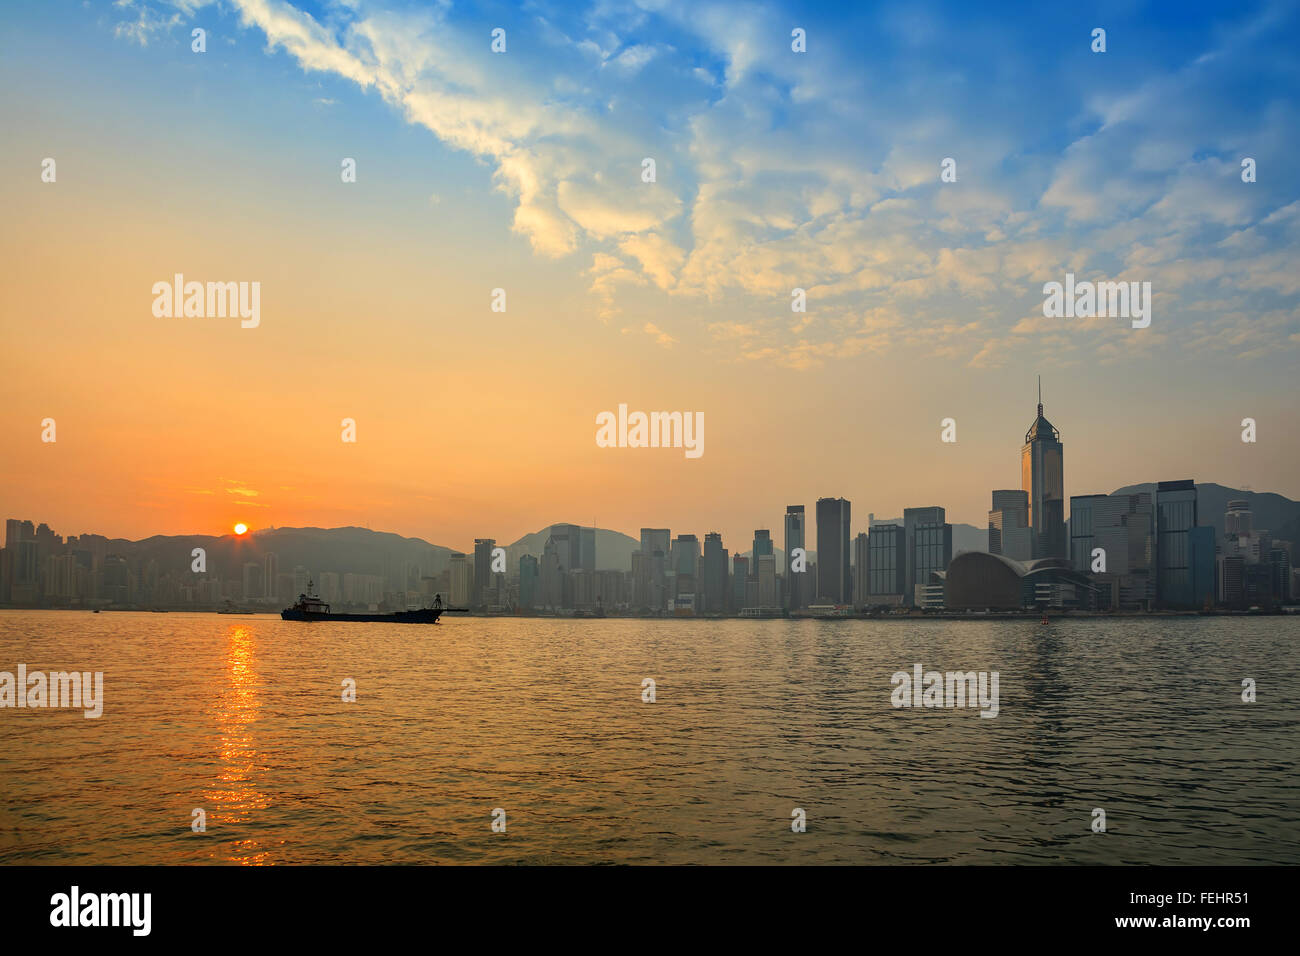 El horizonte de la ciudad de Hong Kong Foto de stock